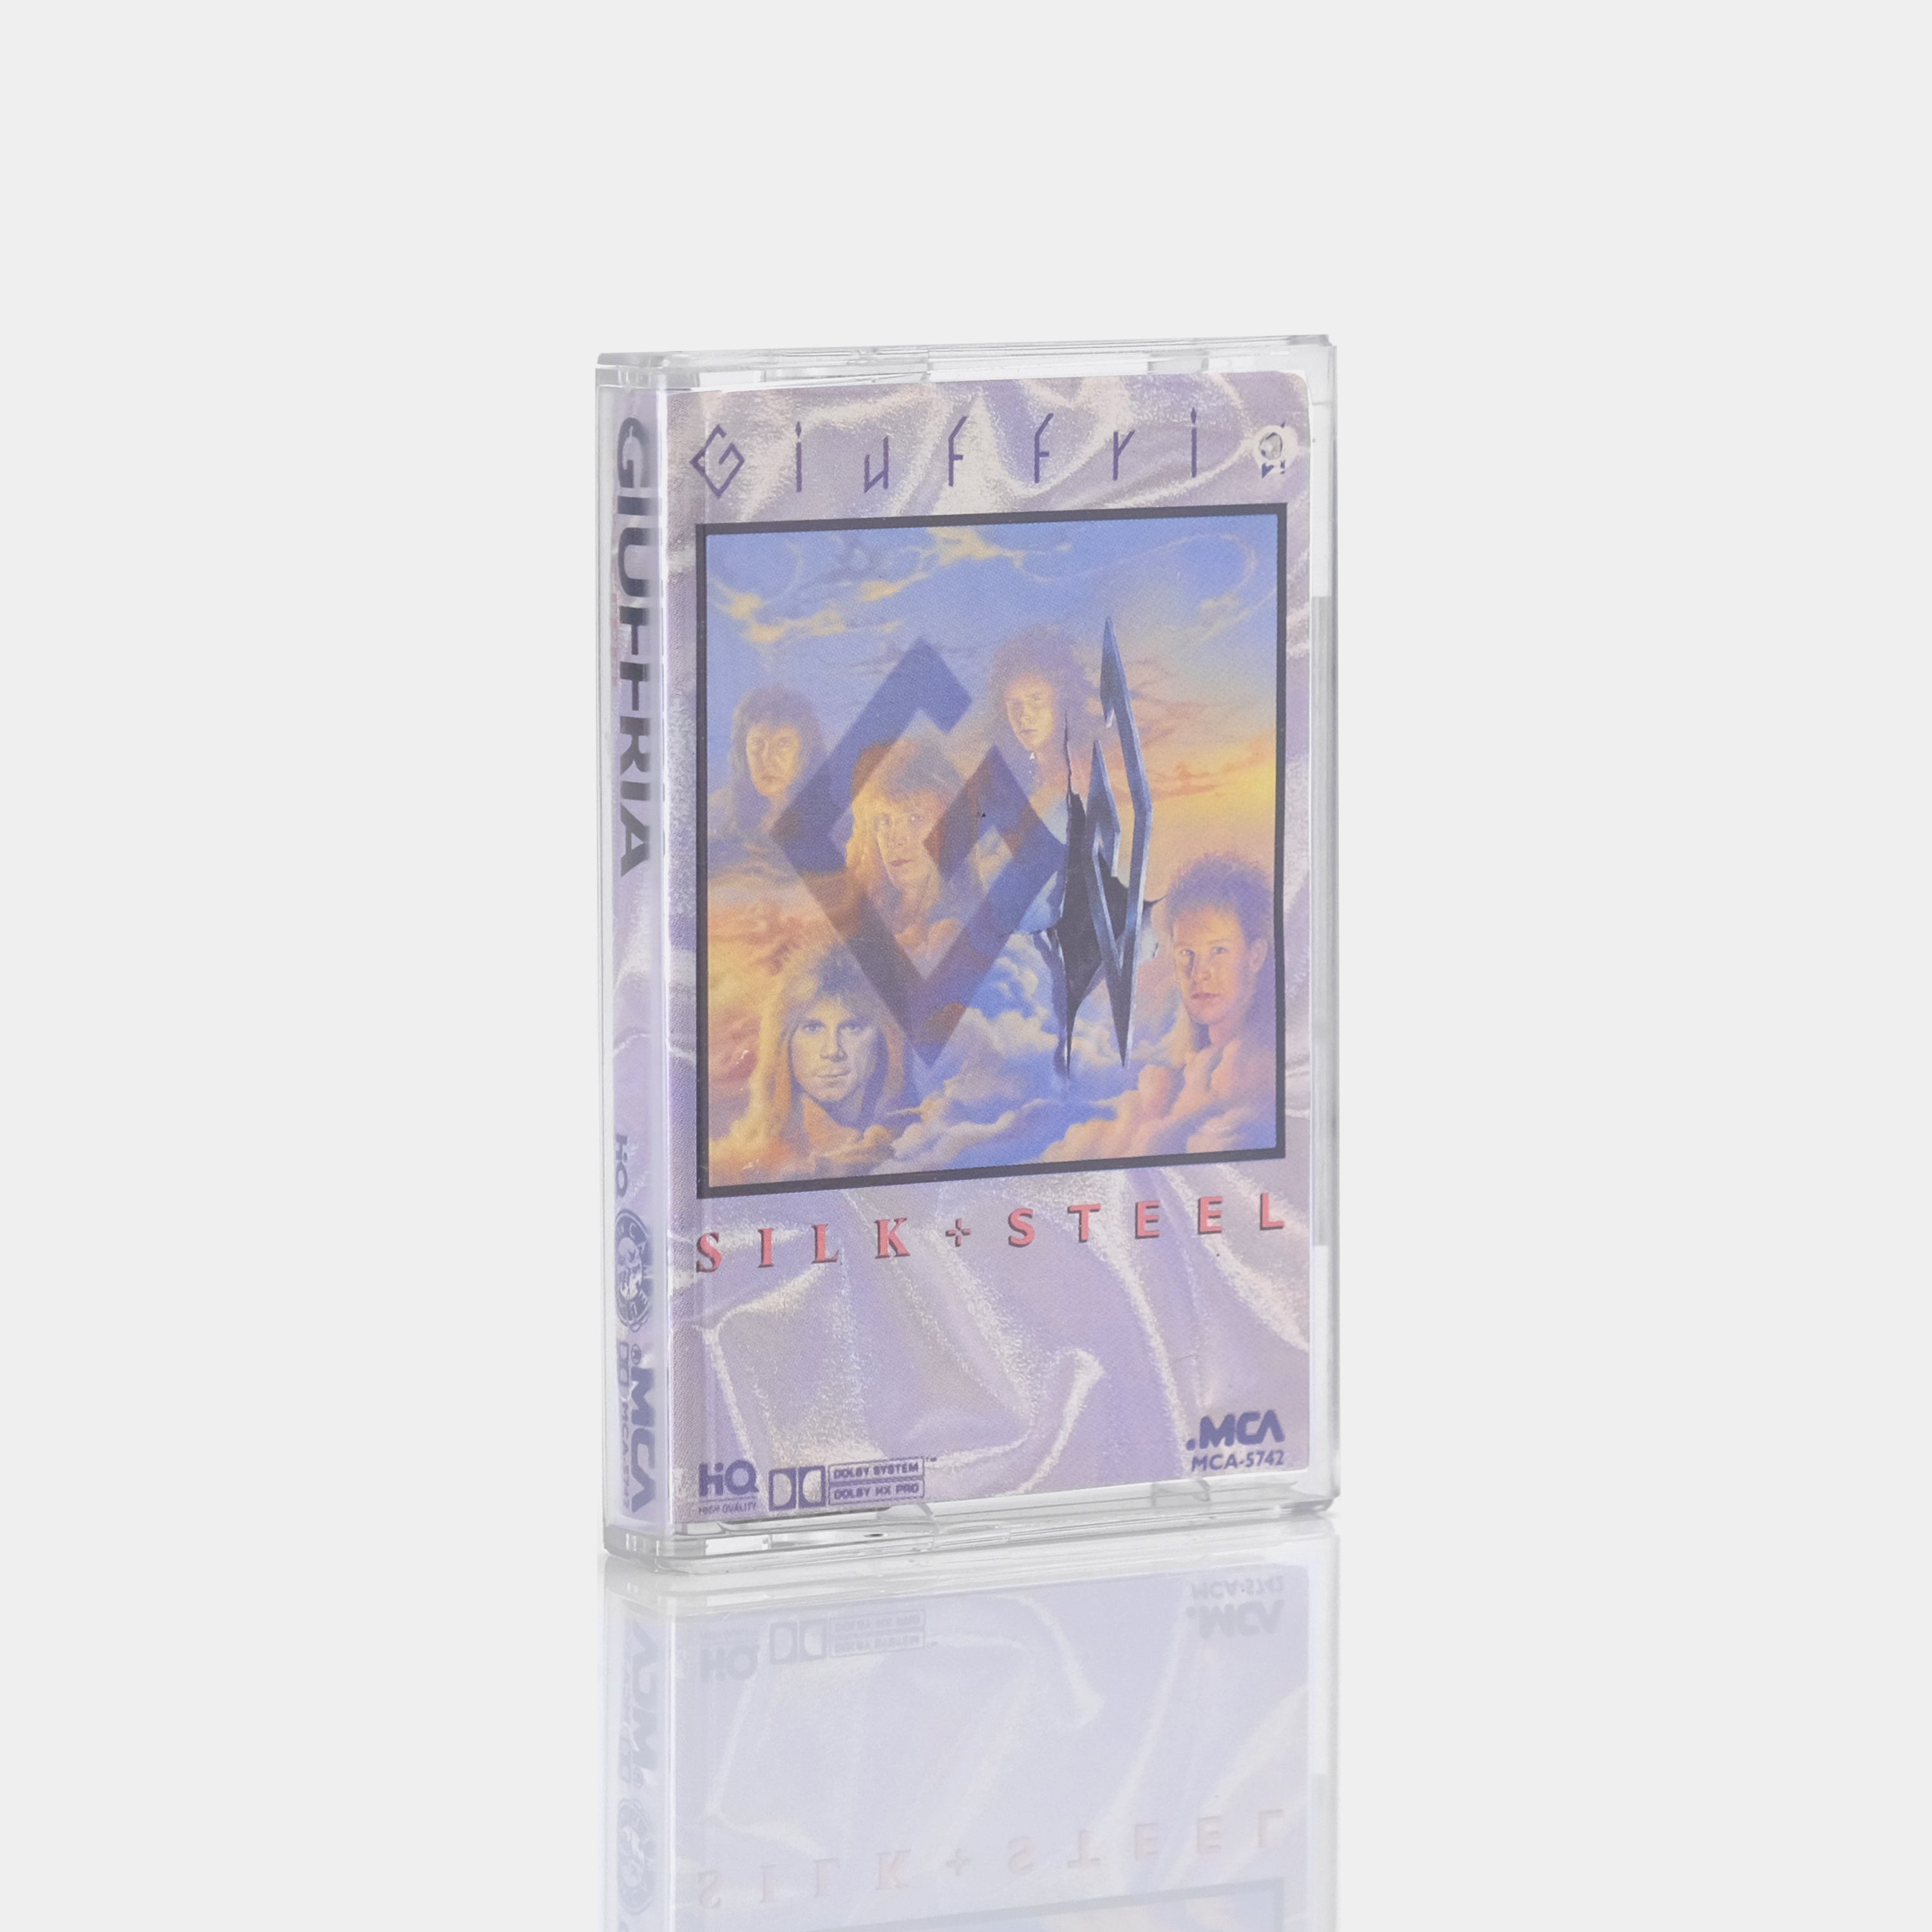 Giuffria - Silk + Steel Cassette Tape